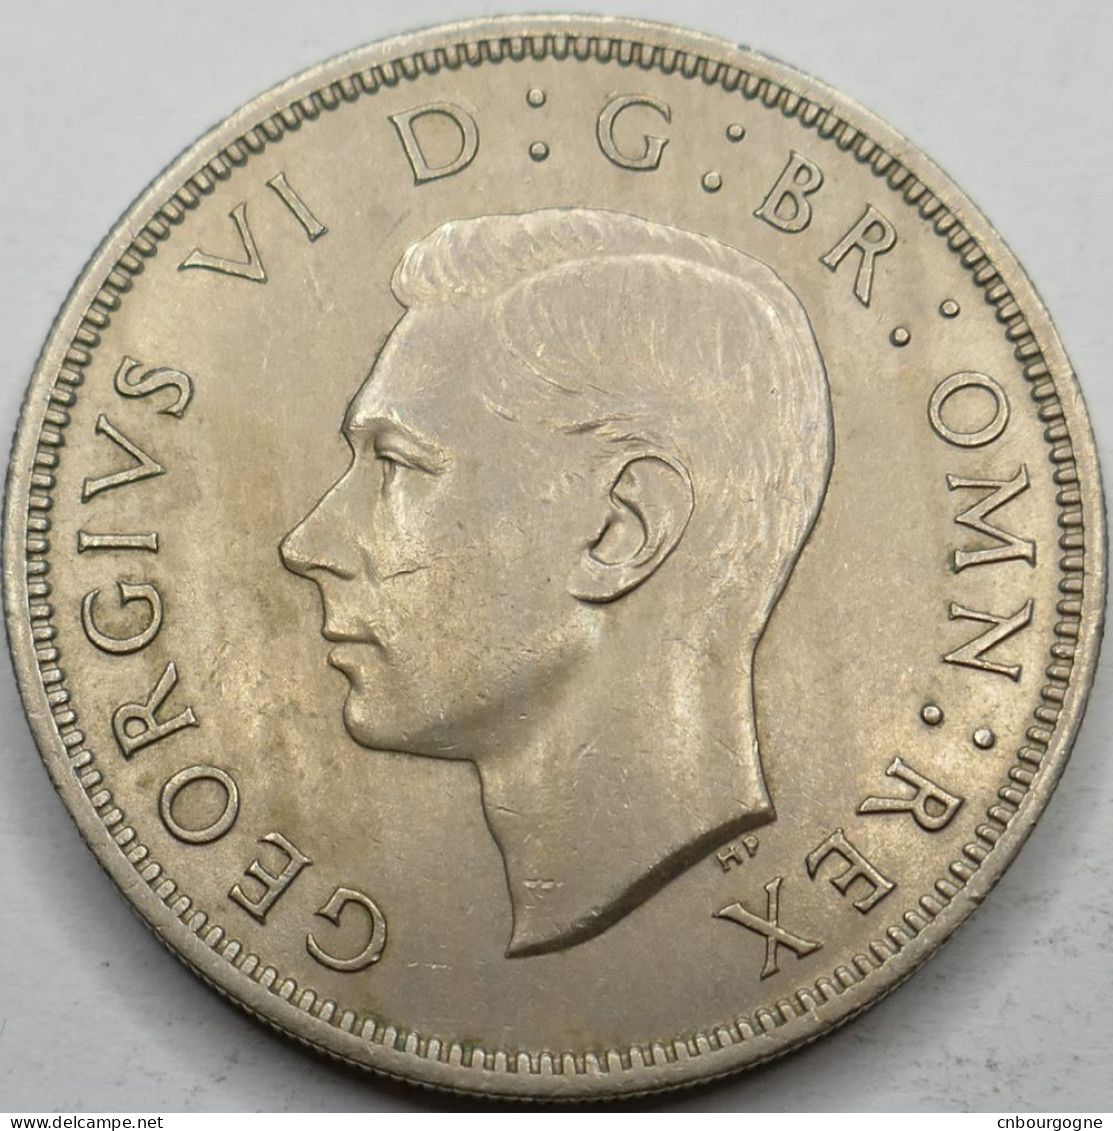 Royaume-Uni - George VI - Two Shillings 1951 - SUP/AU58 - Mon6205 - J. 1 Florin / 2 Schillings